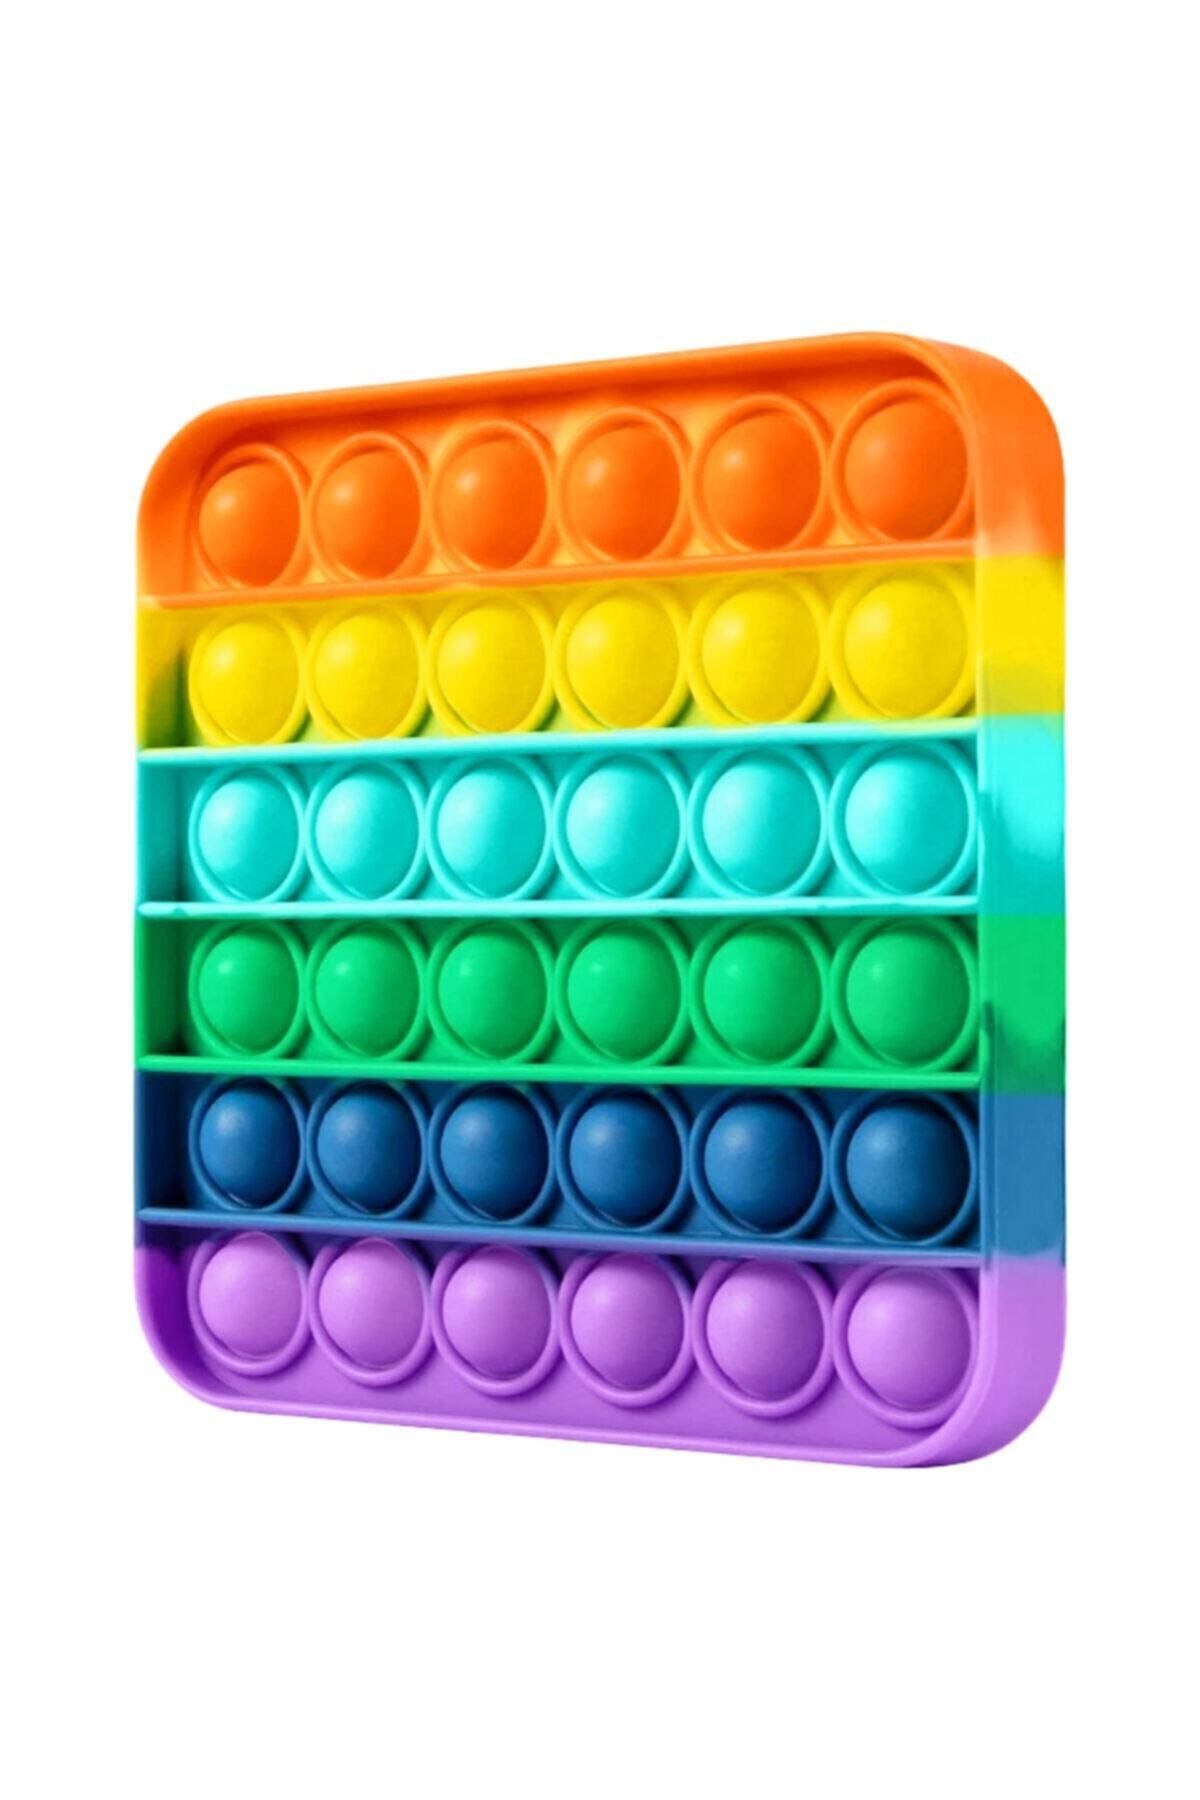 yopigo Özel Pop Duyusal Oyuncak Zihinsel Stres ( Rainbow Renk, Kare )